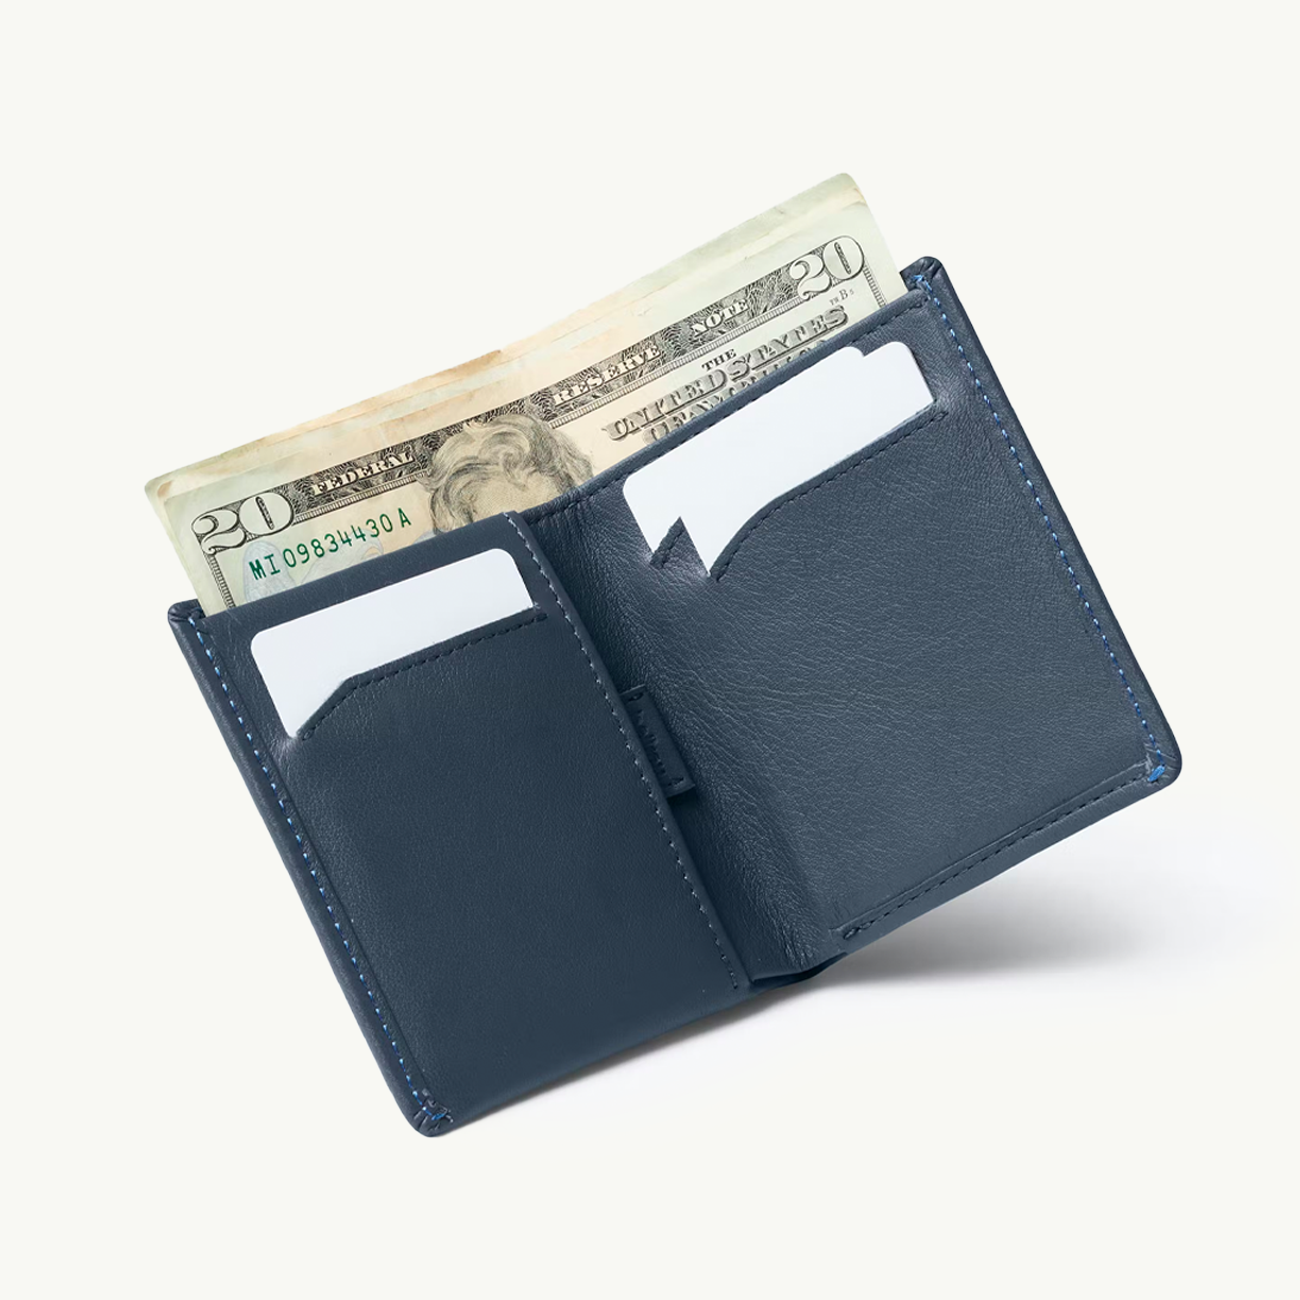 Note Sleeve Wallet - Basalt